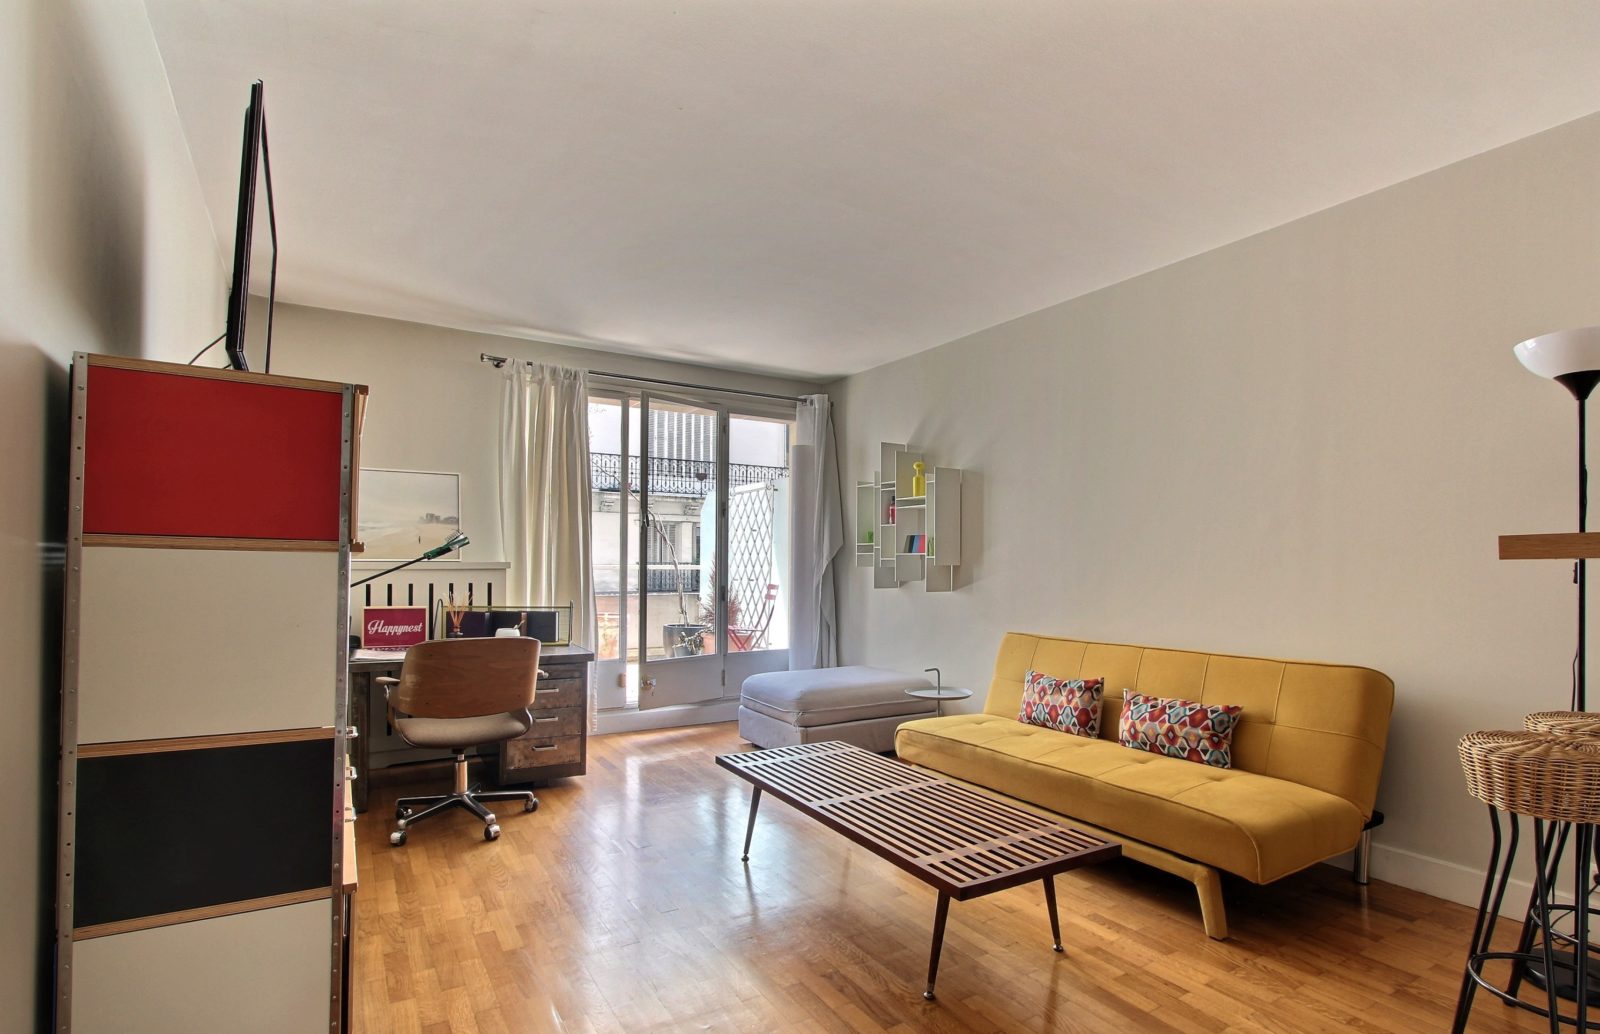 1 bedroom apartment rental in Paris, Rue de Vaugirard